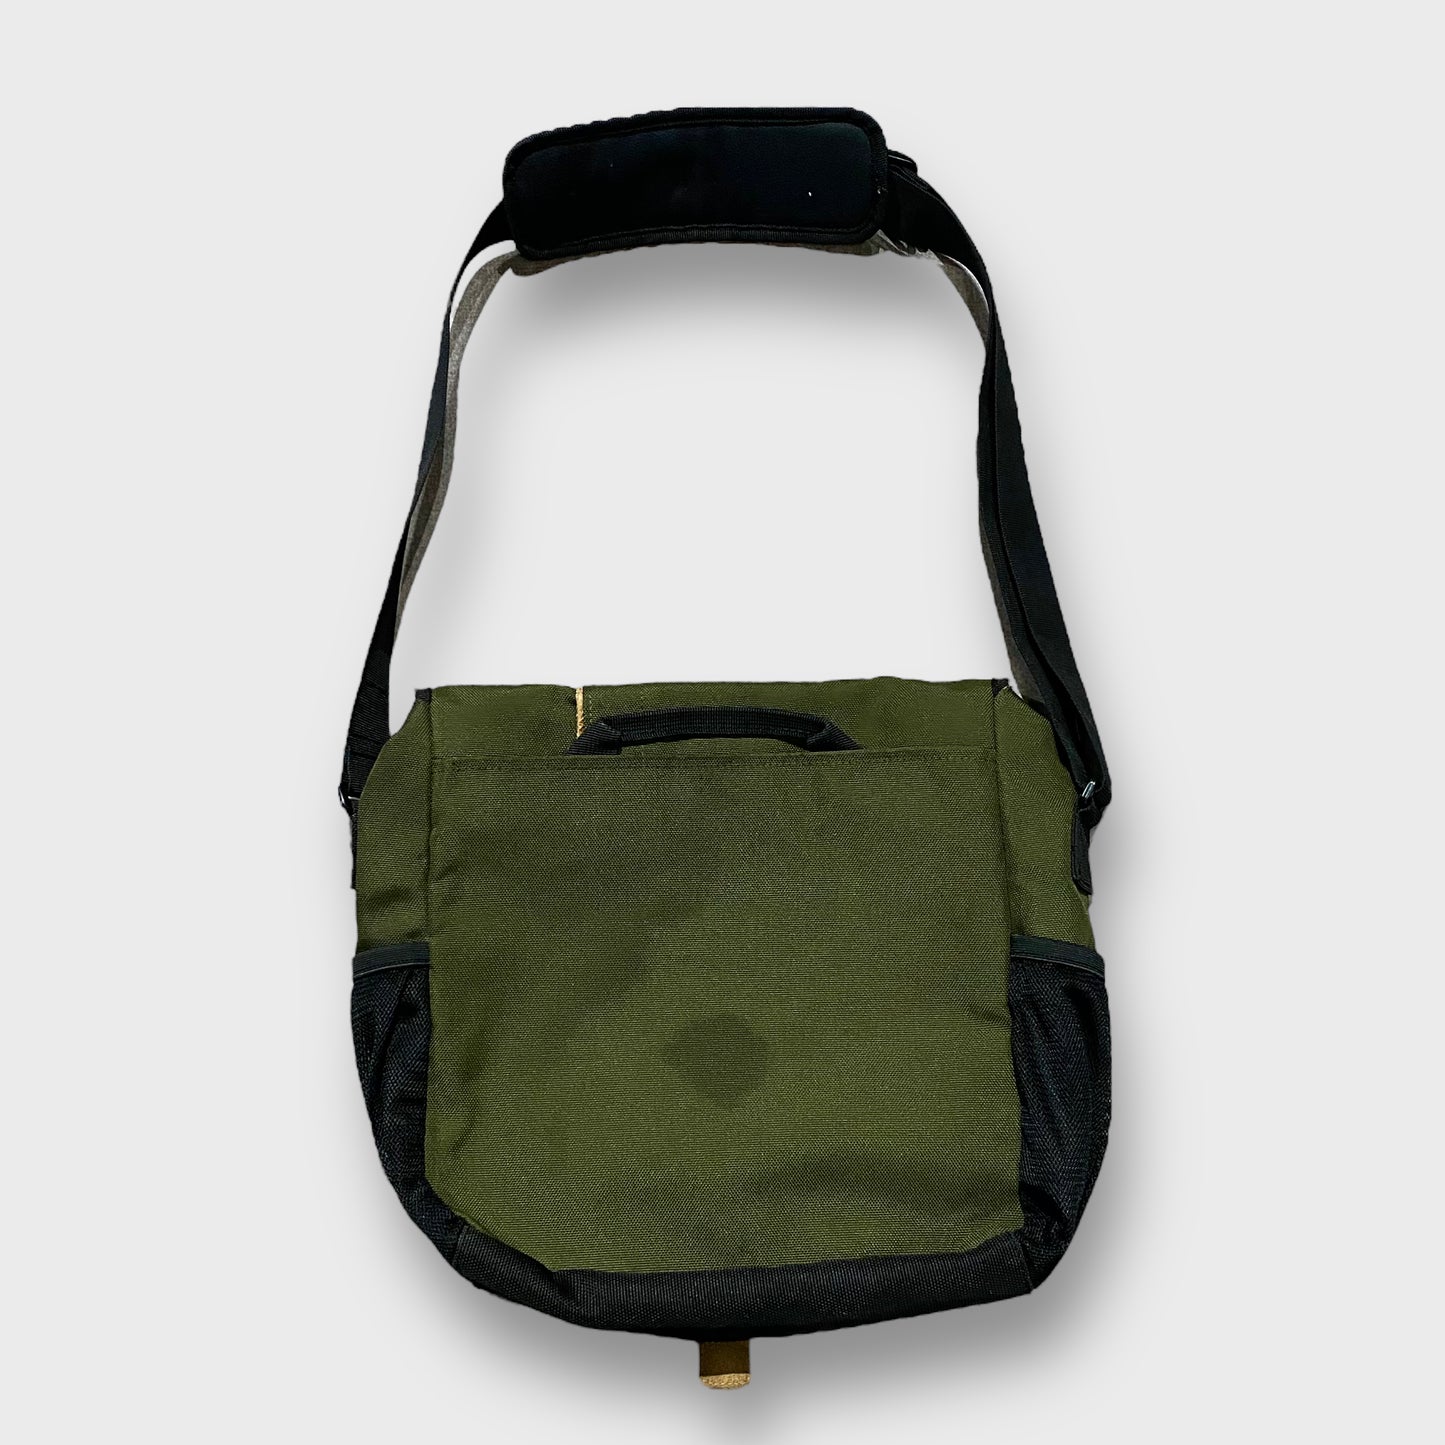 "Timberland" Shoulder bag